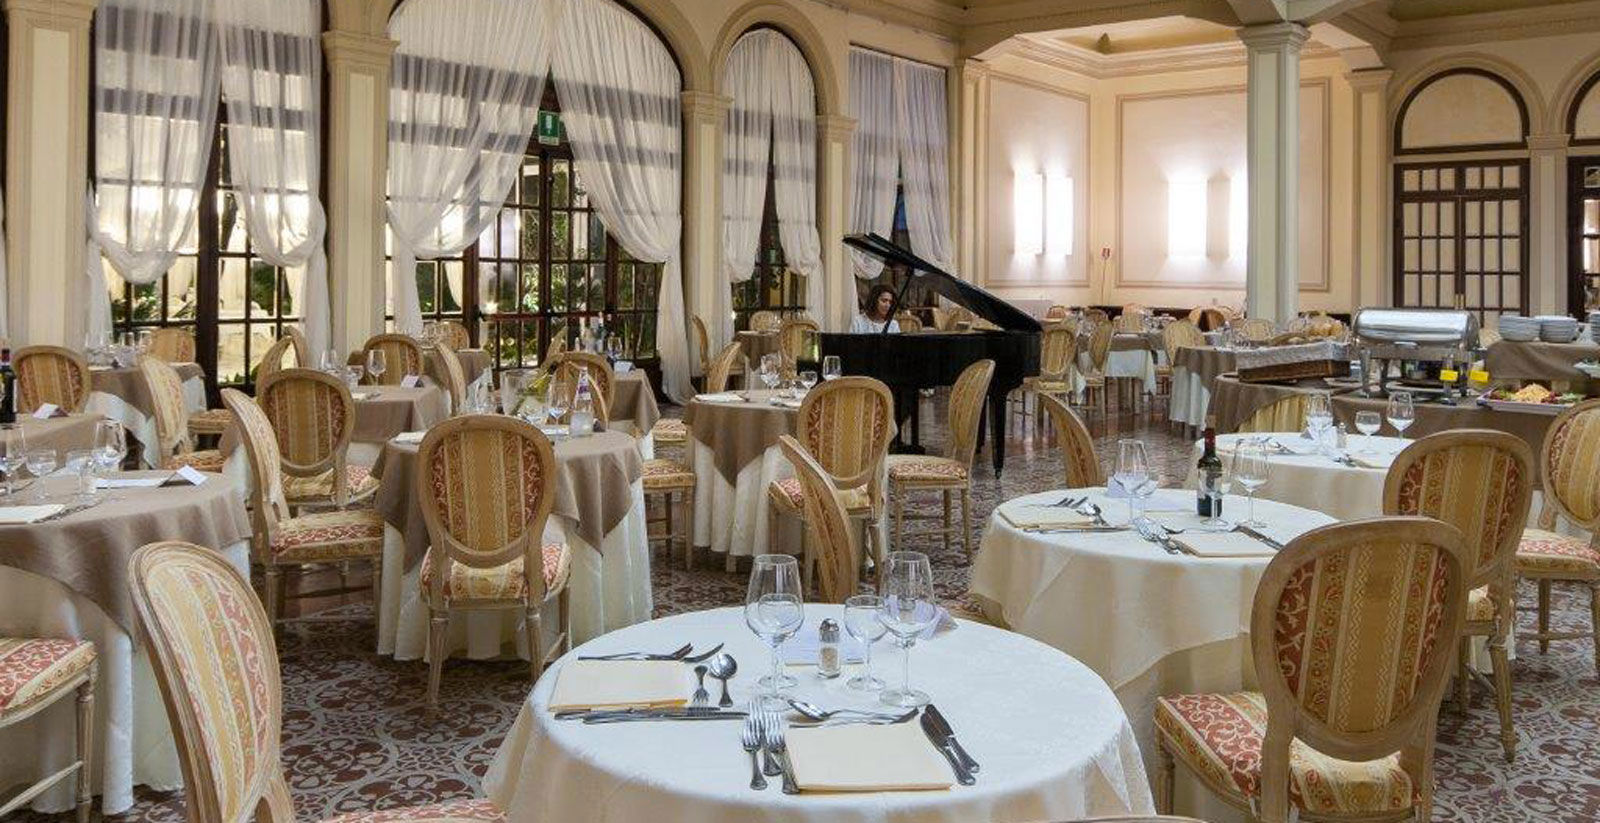 Restaurante Grand Hotel Royal 4 estrellas 4